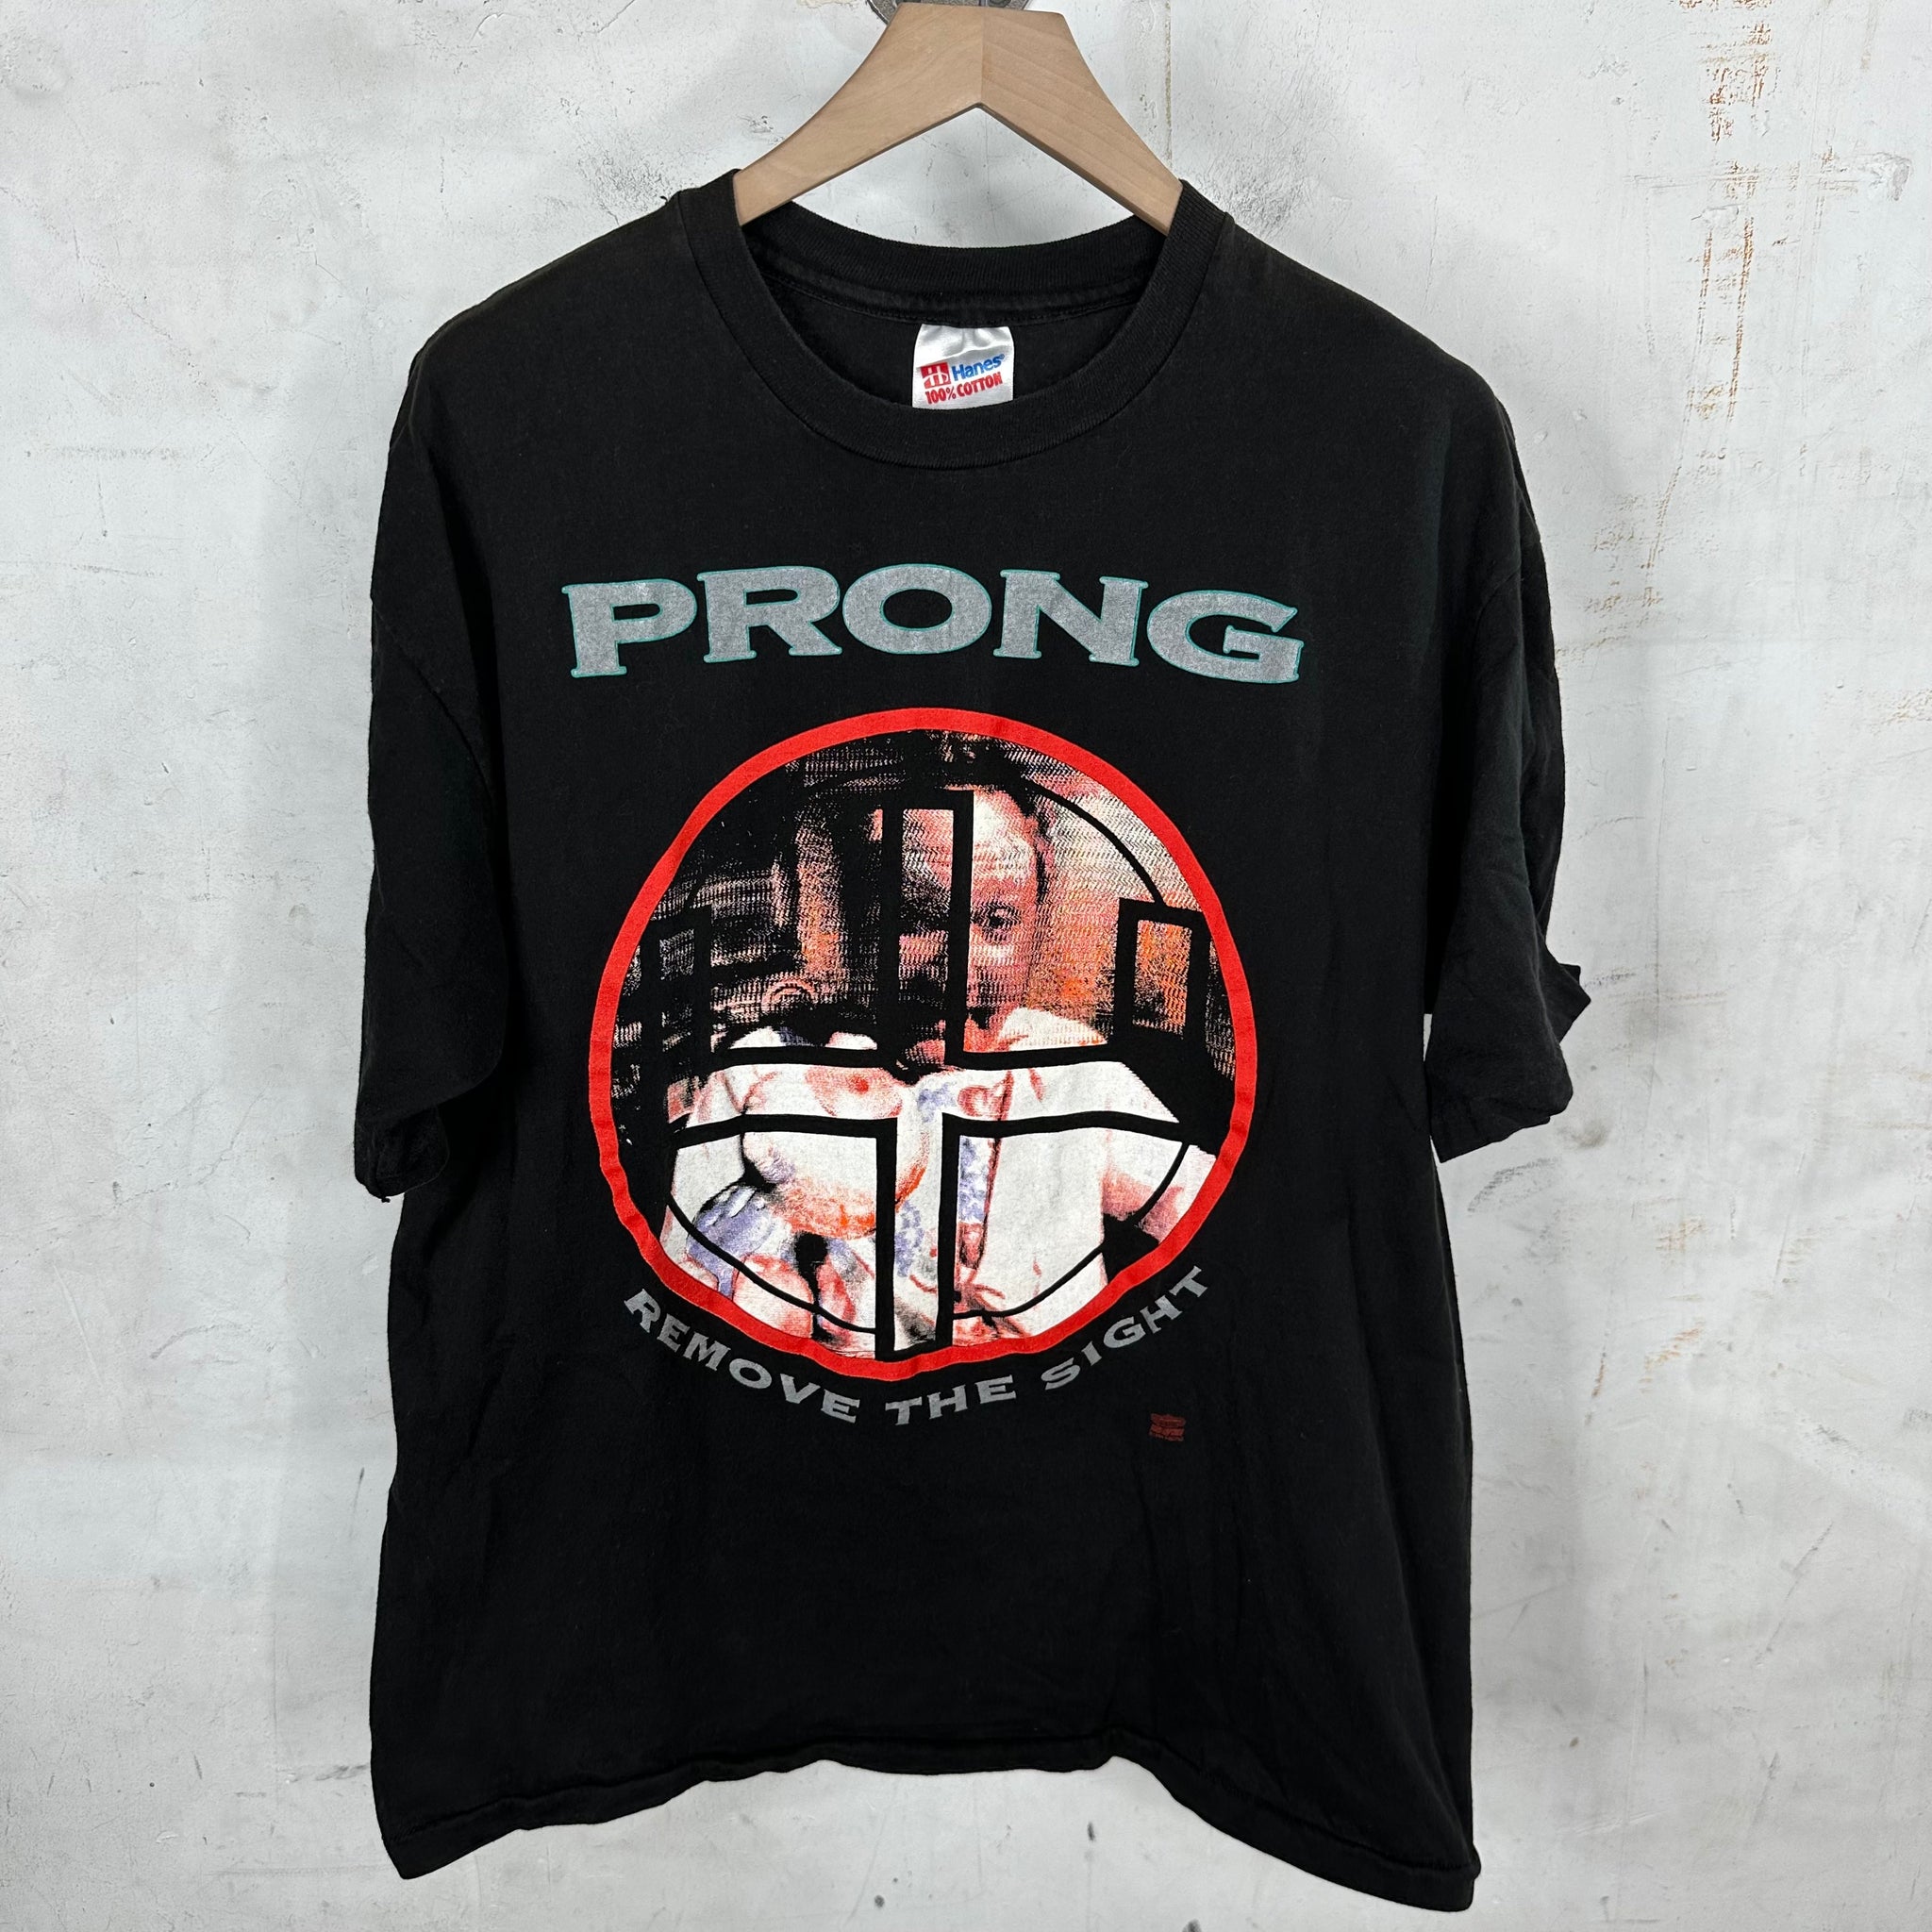 Vintage Prong Tour T-Shirt